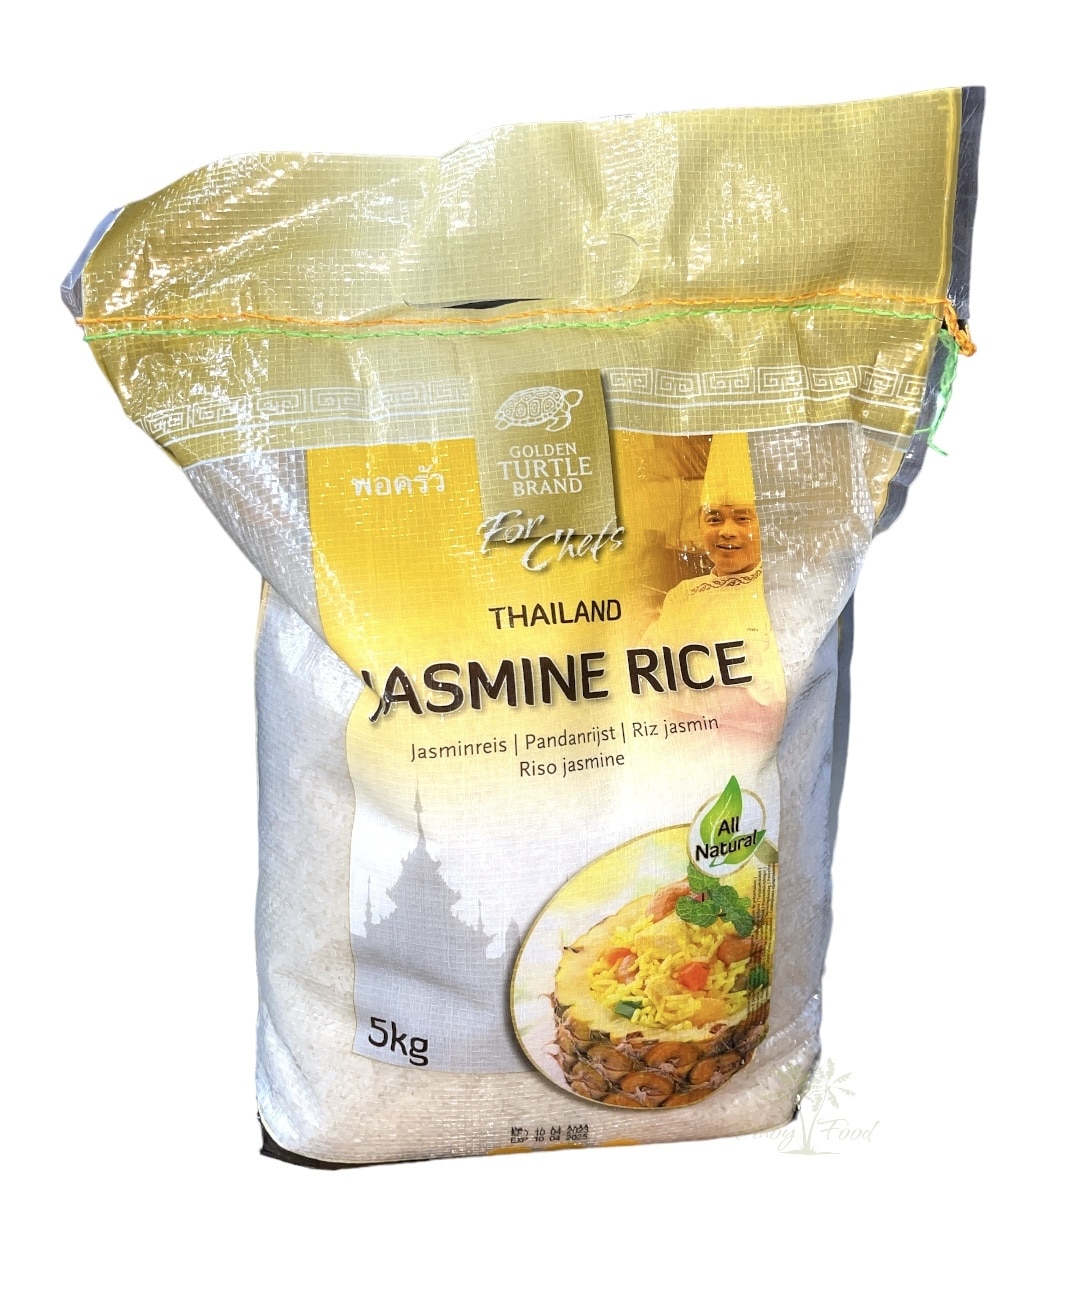 Golden Turtle Brand - Jasmine Rice - 5kg - PINOYFOOD STORE